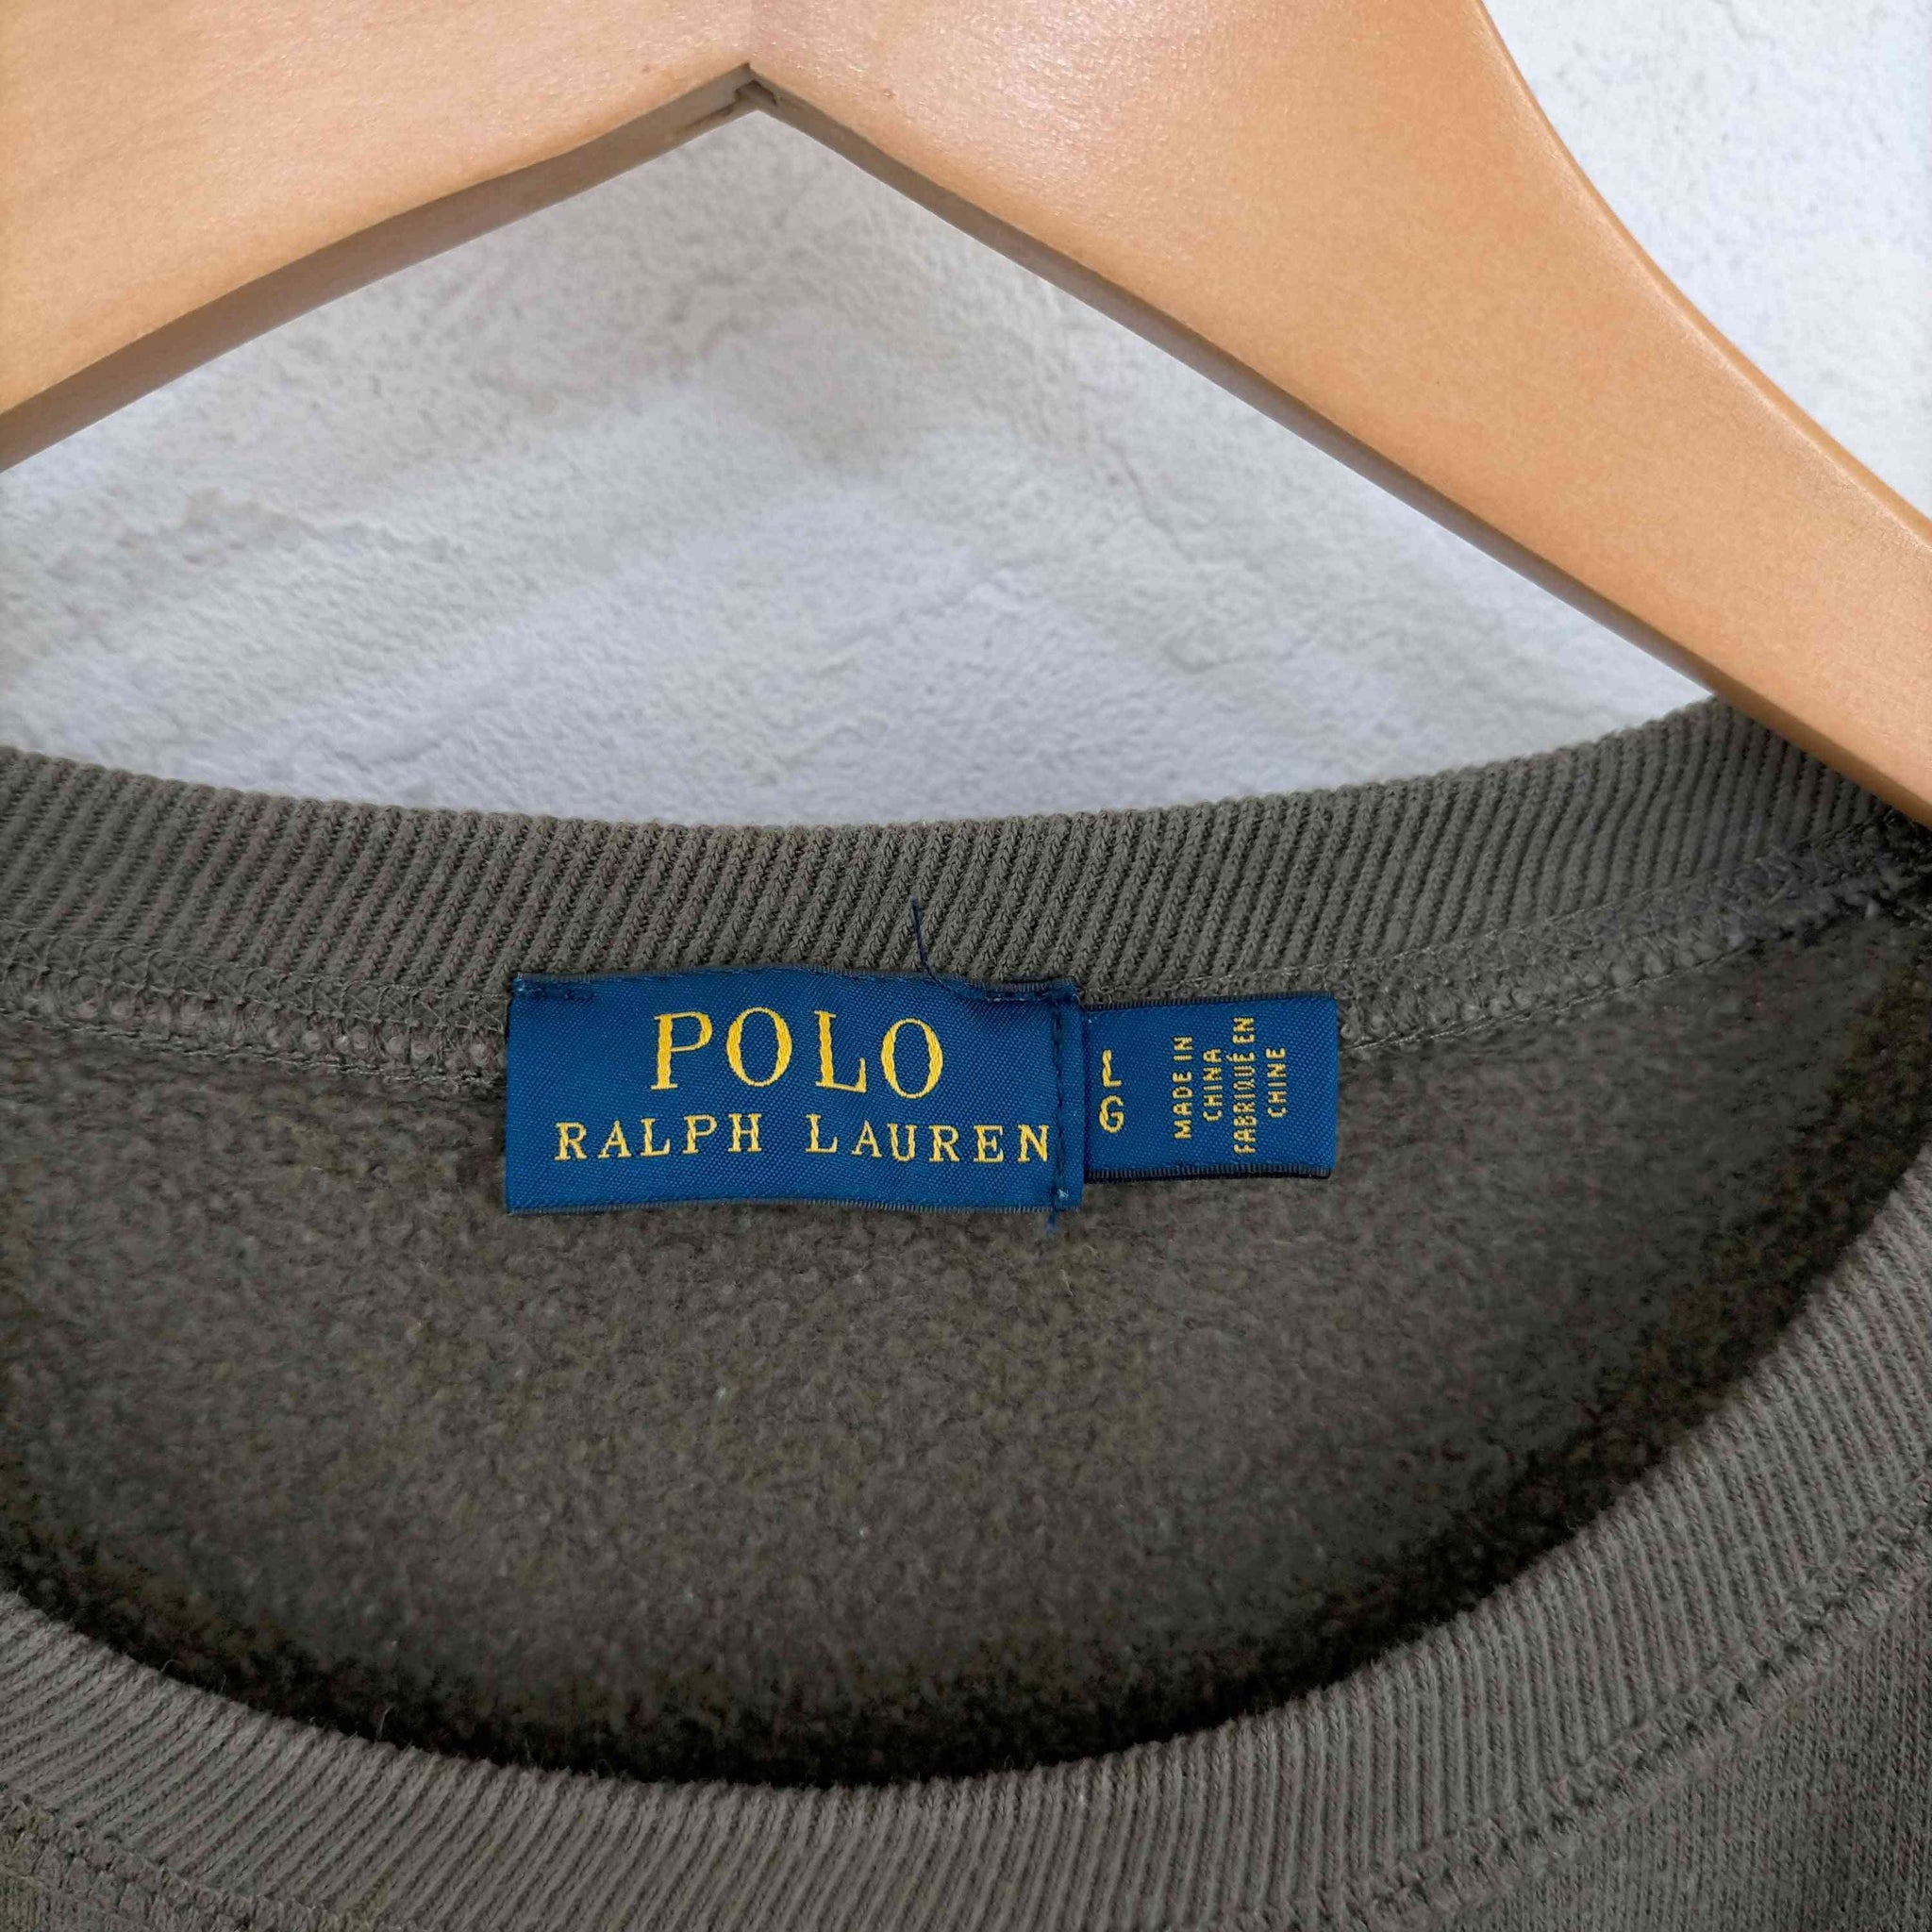 POLO RALPH LAUREN(ポロラルフローレン)スモールポニー刺繍スウェット